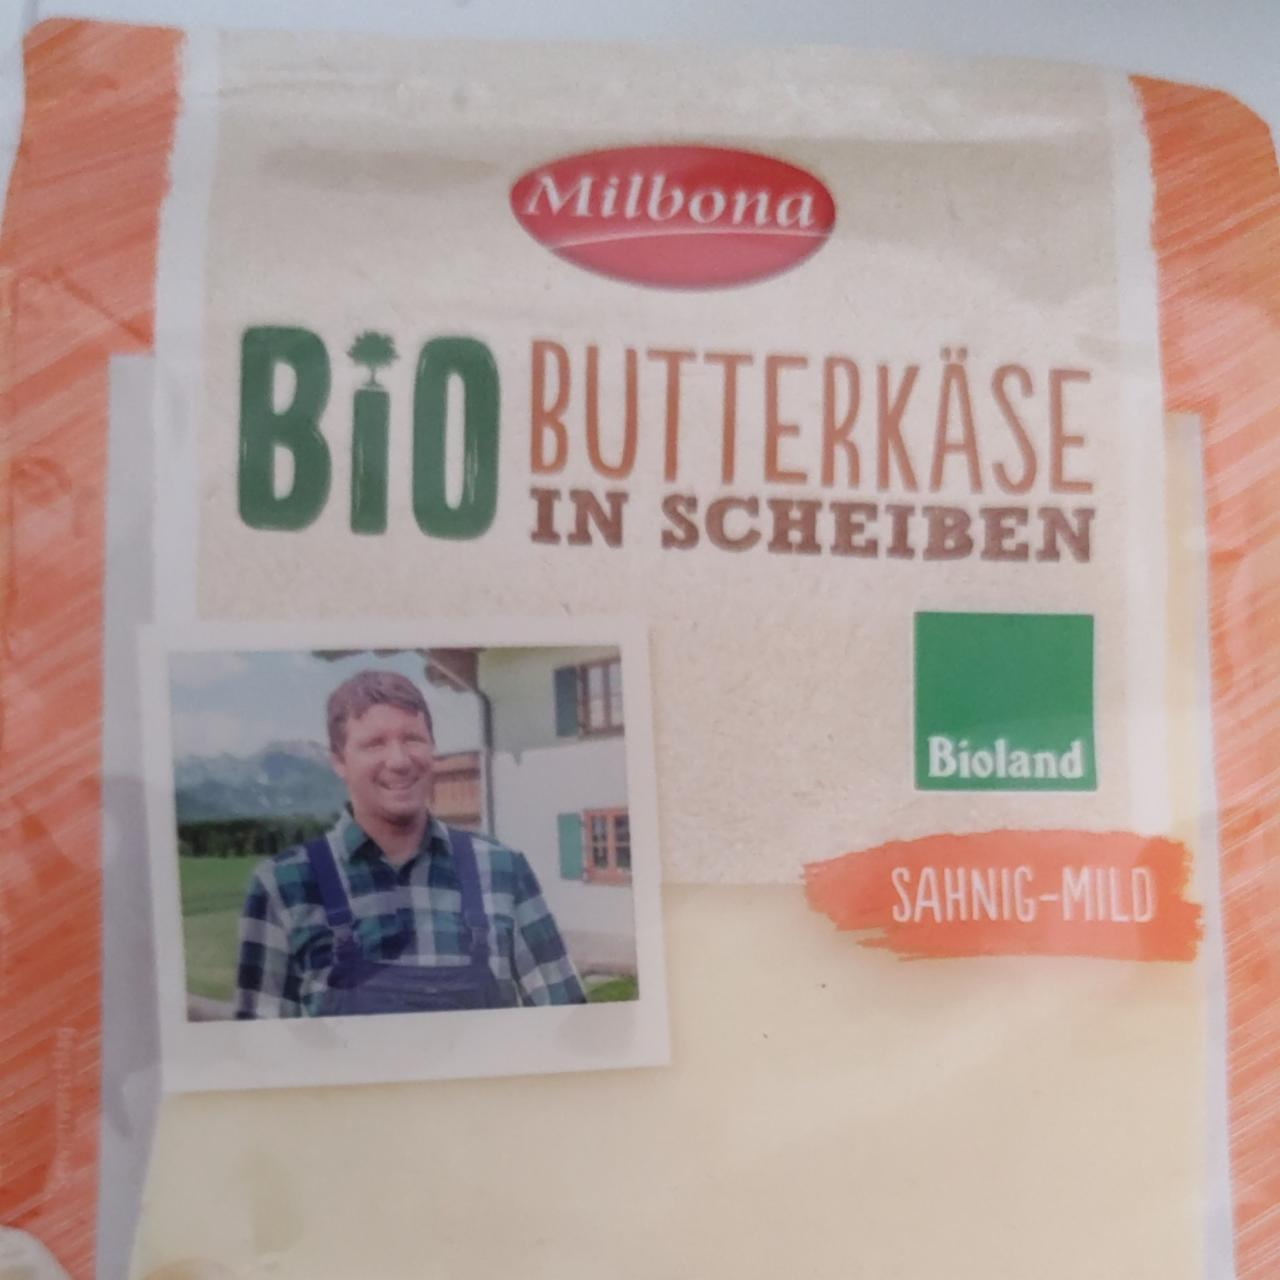 Fotografie - Bio Butterkäse in Scheiben Milbona